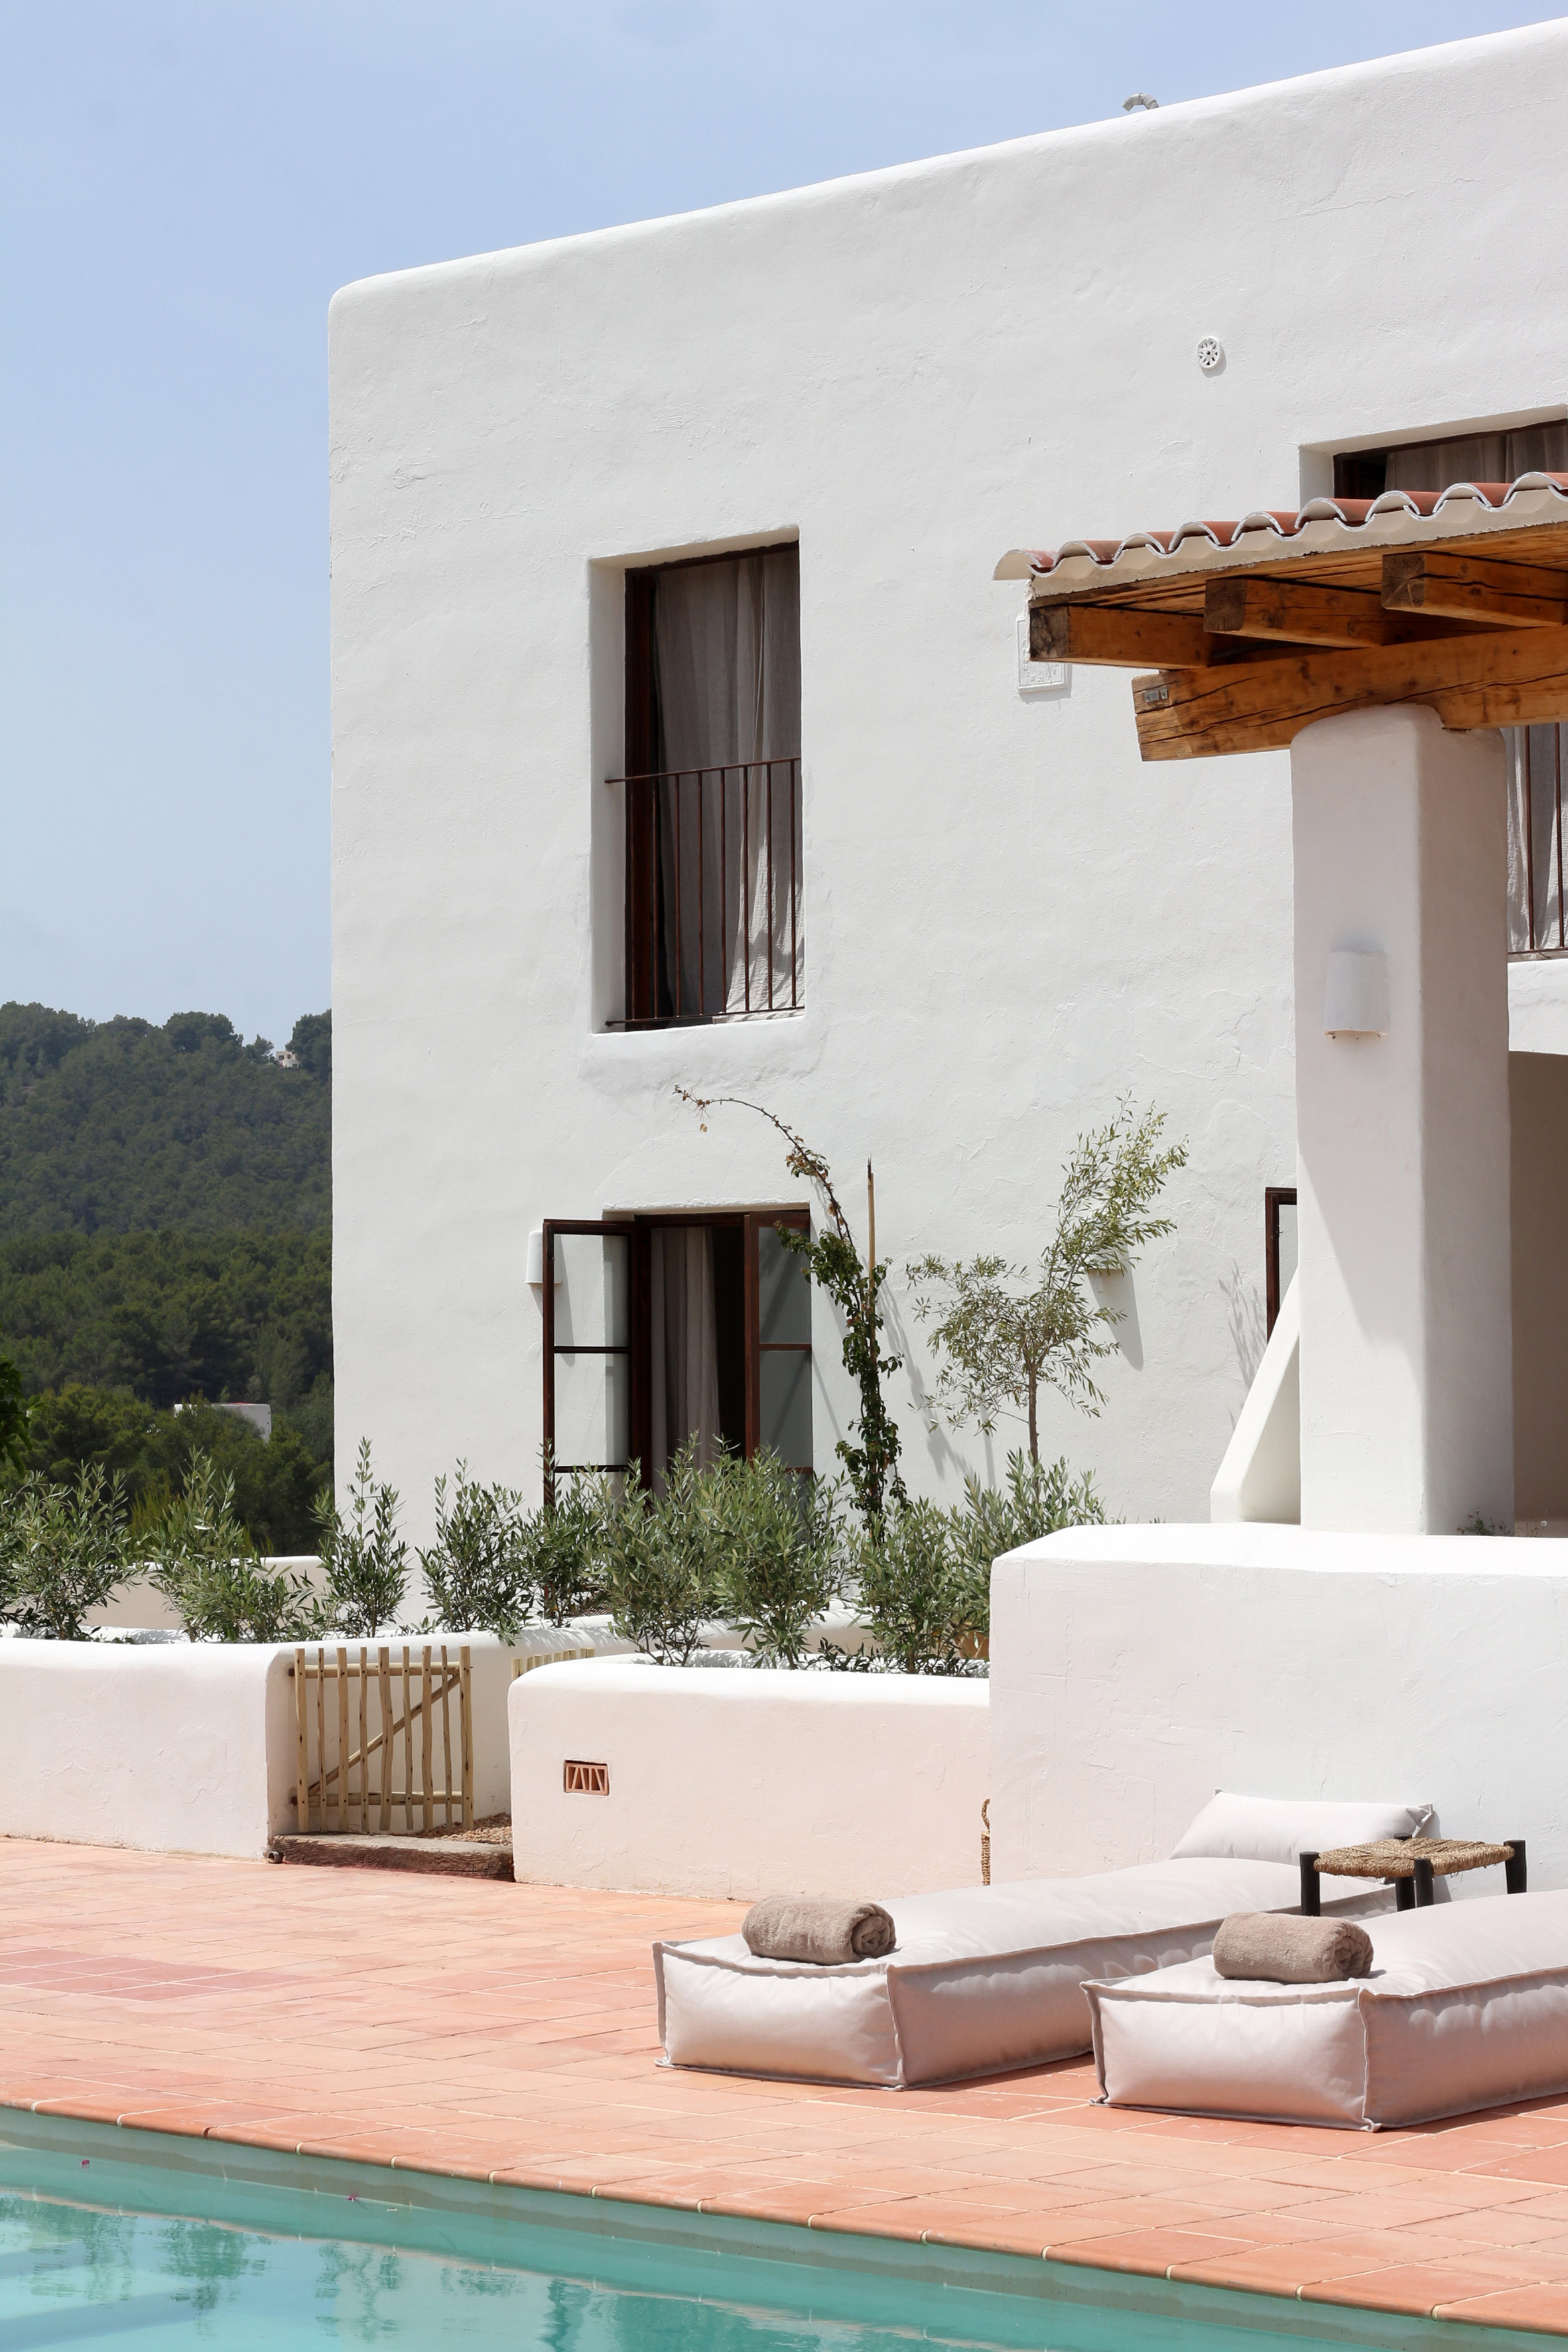 经过翻新的伊维萨岛finca酒店保留了Aguamadera酒店的乡村魅力|ART-Arrakis | 建筑室内设计的创新与灵感